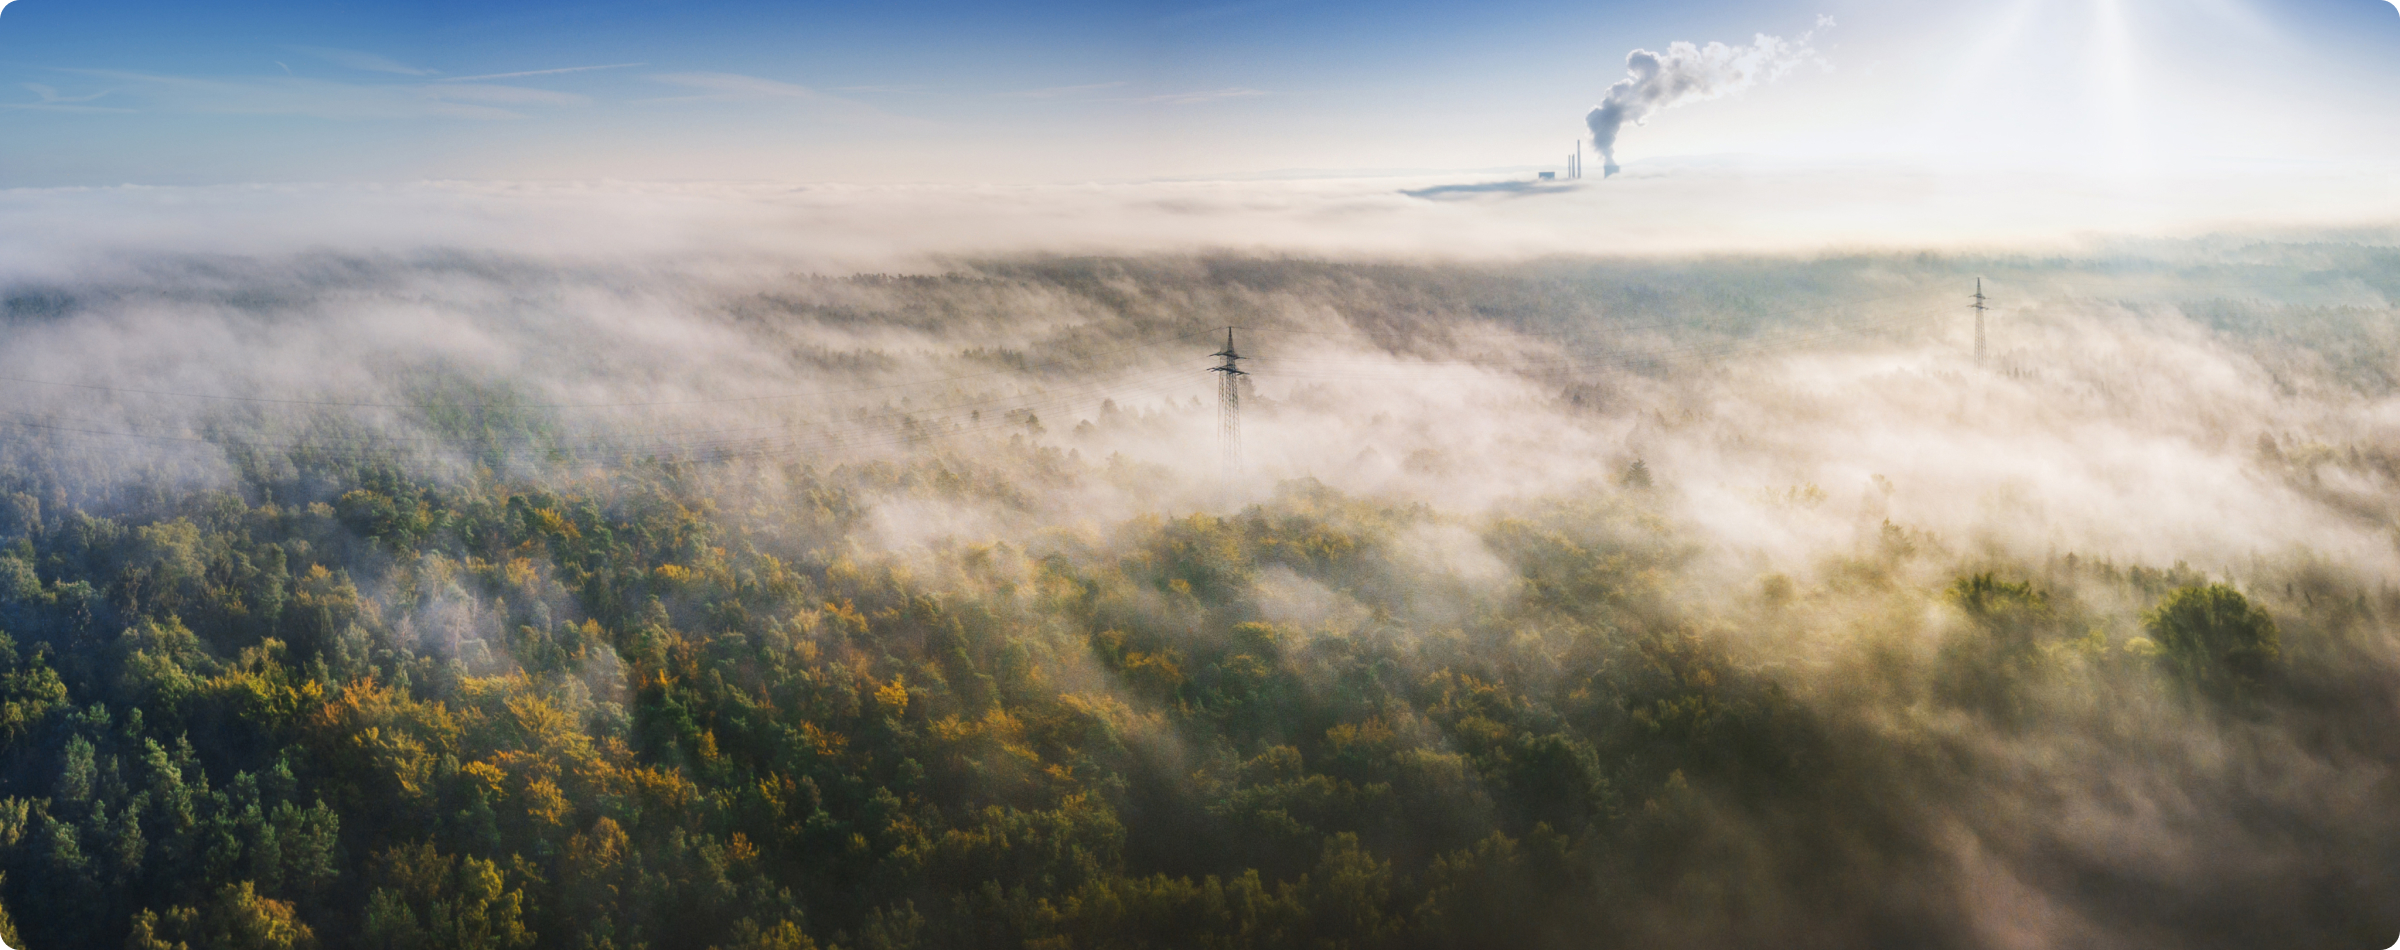 Cime des arbres de la forêt tropicale avec brouillard planant